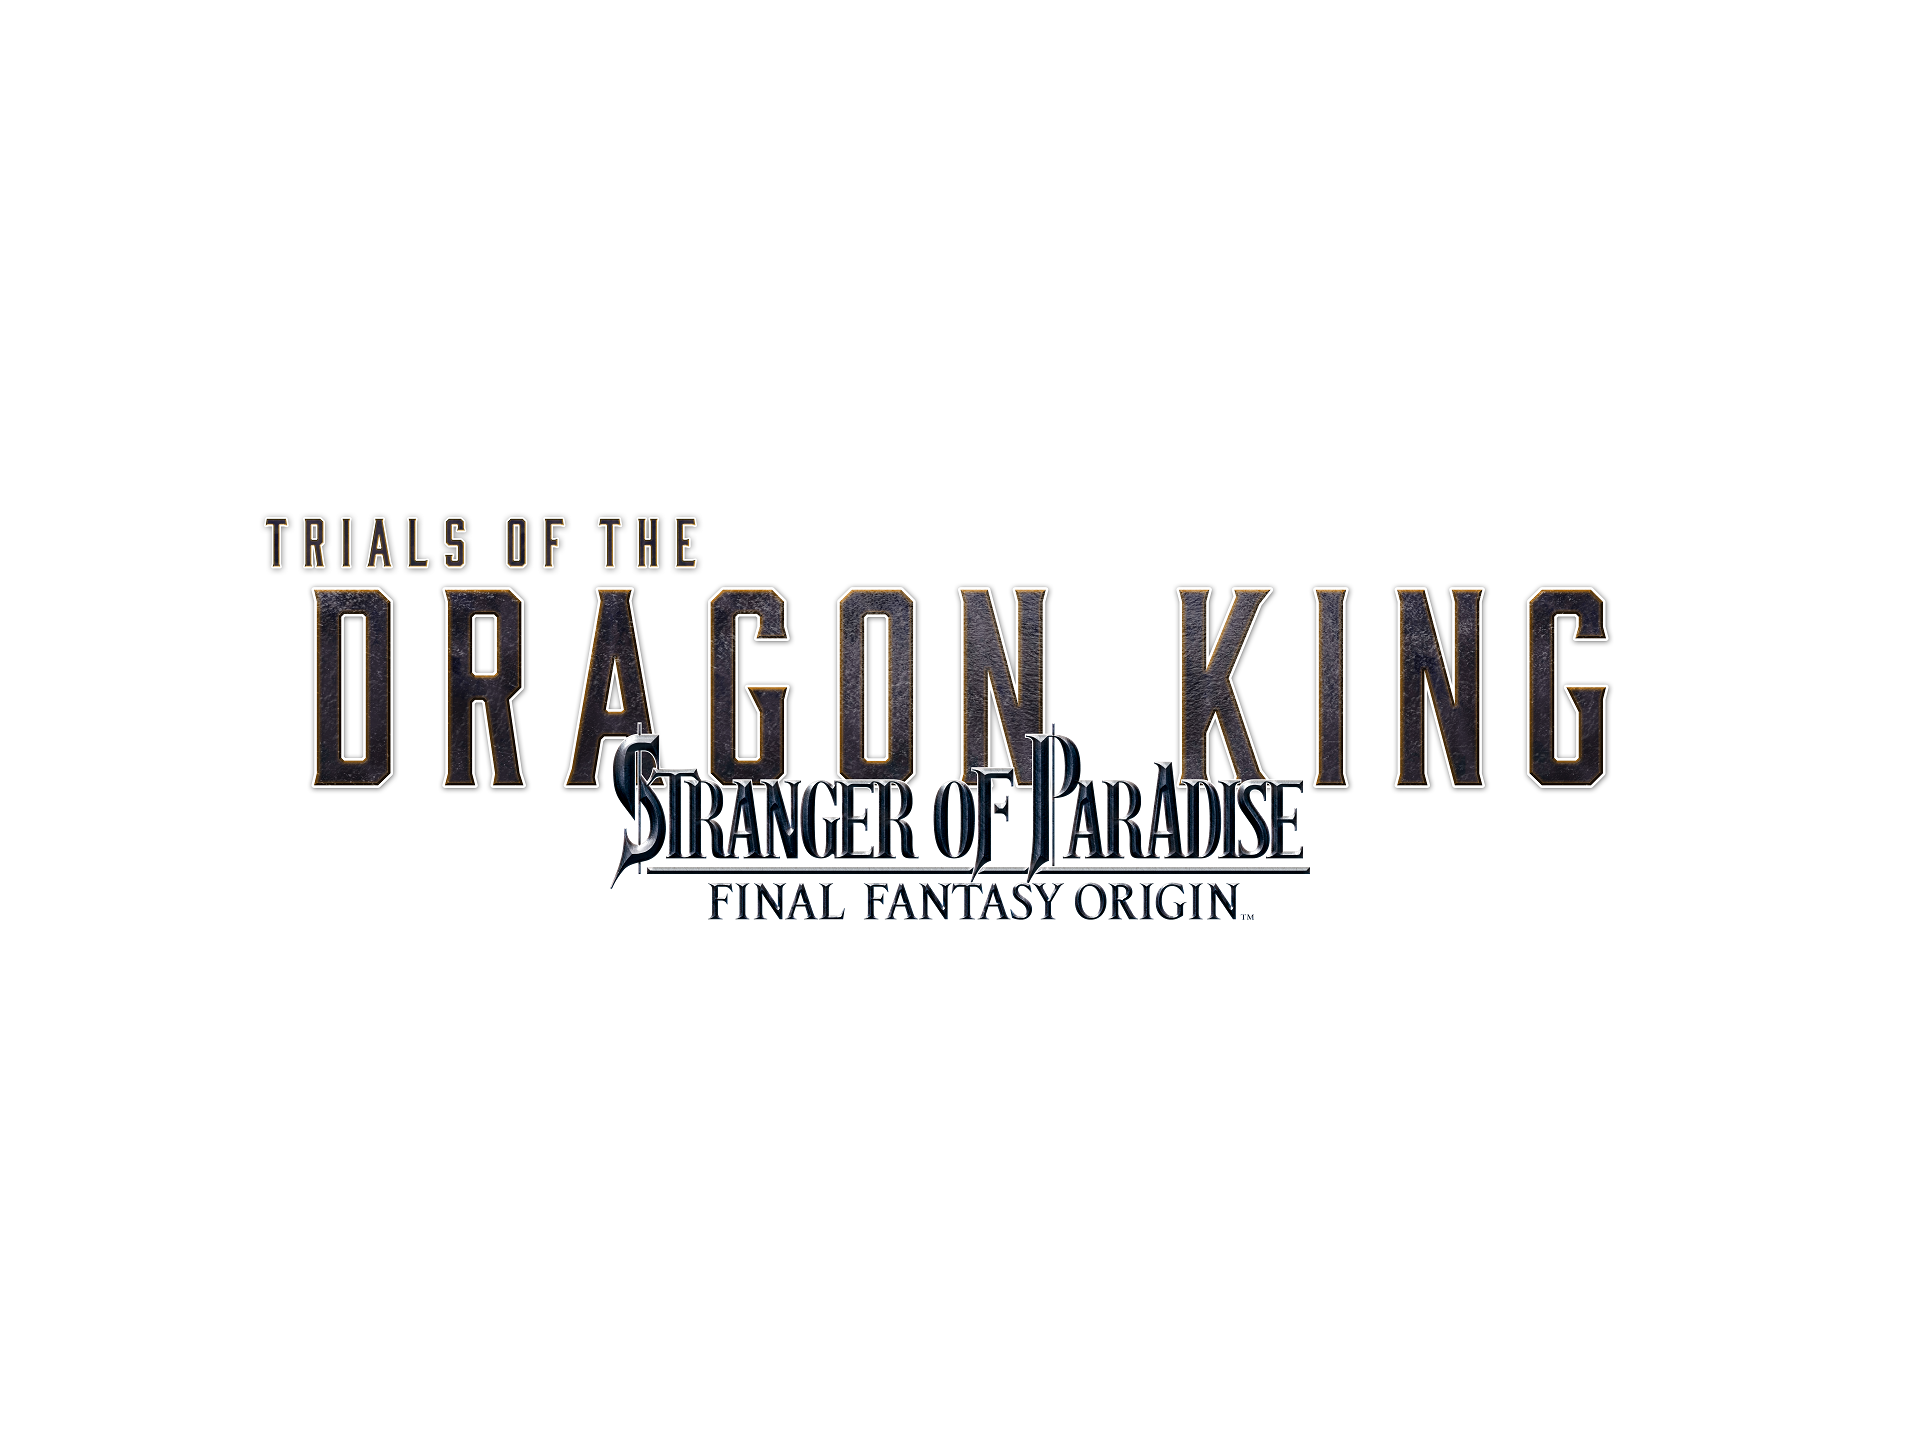 《樂園的異鄉人 Final Fantasy 起源》預定 7 月釋出追加任務「龍王巴哈姆特的考驗」